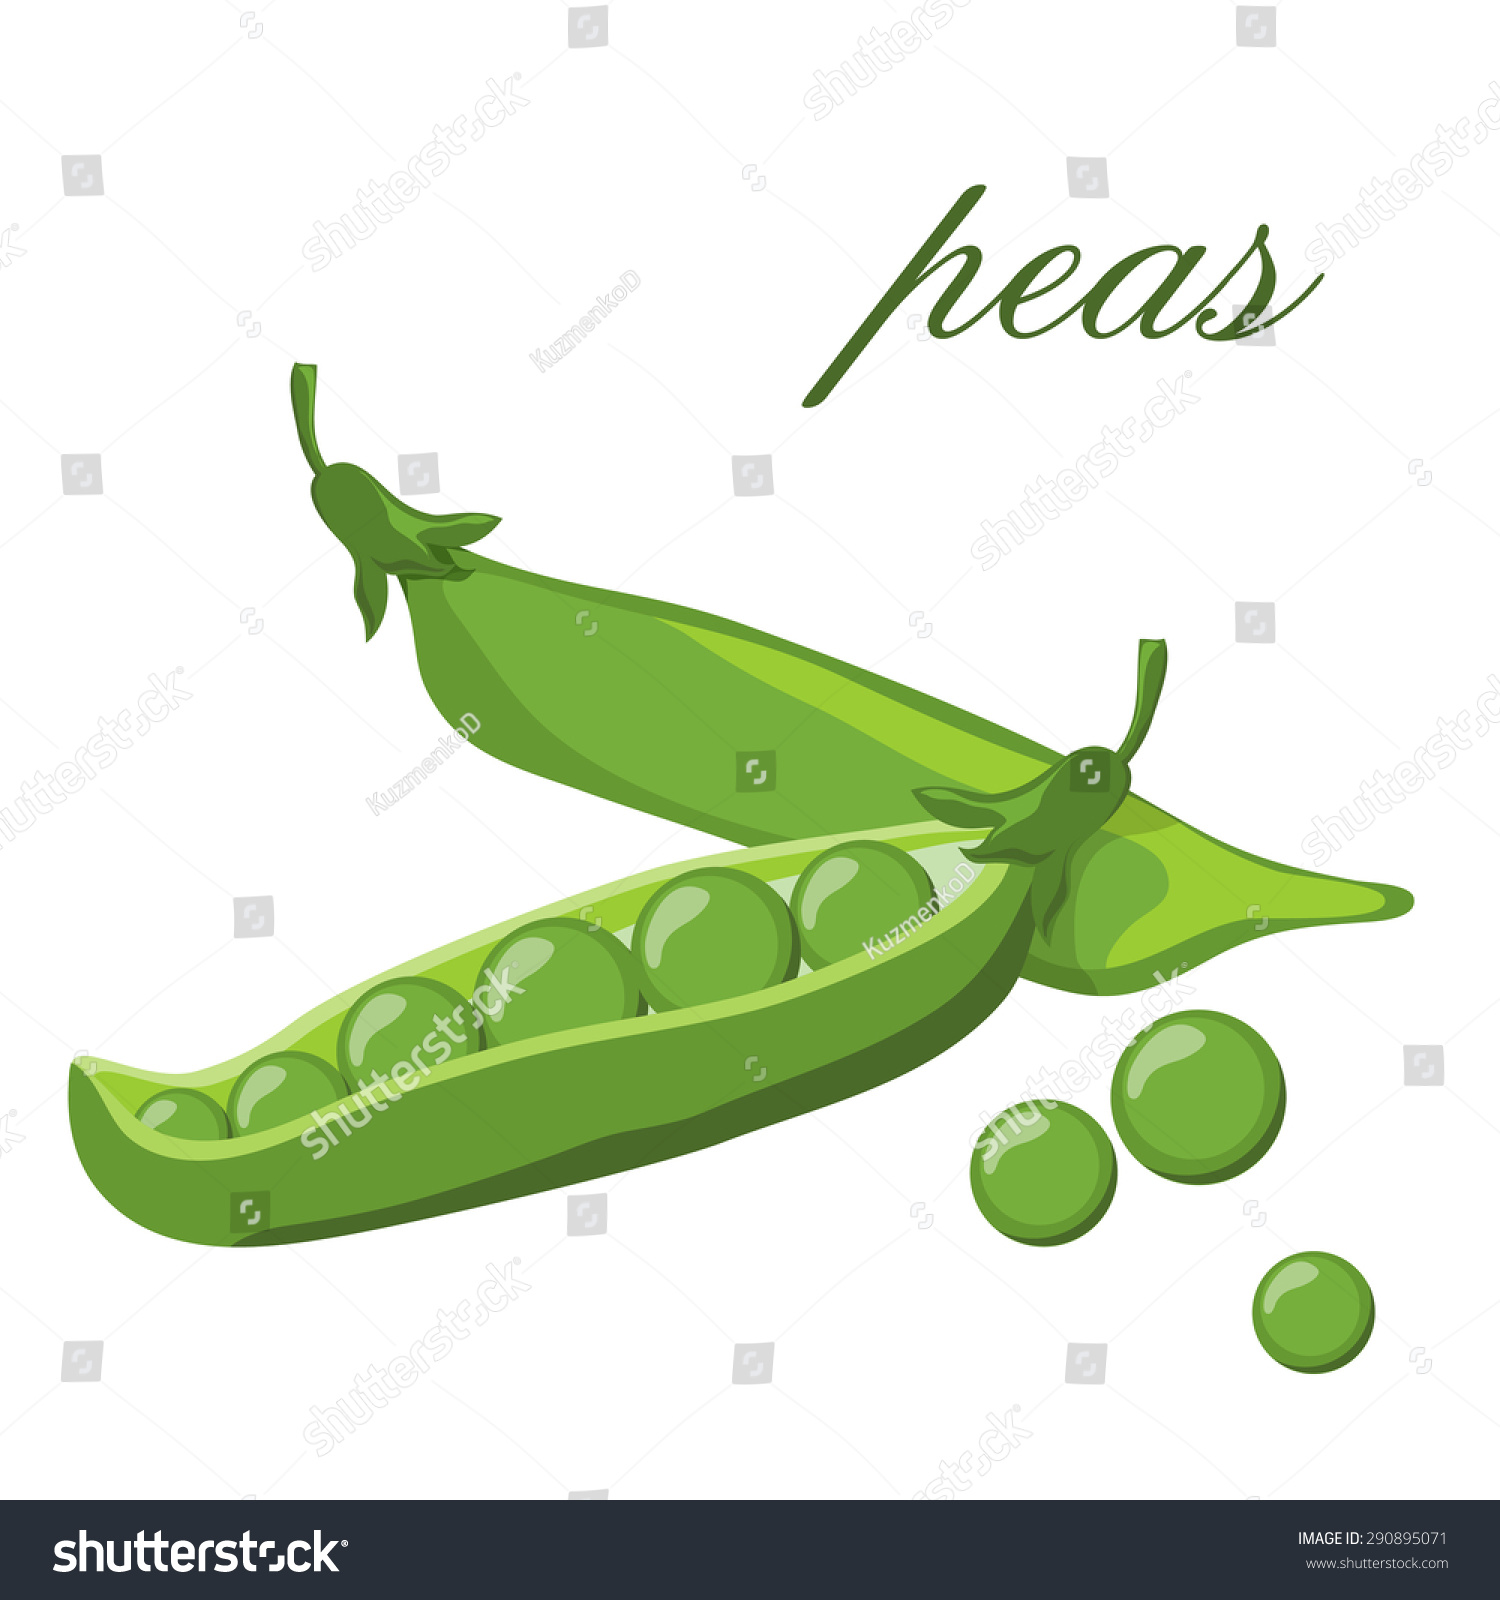 green peas clipart - photo #30